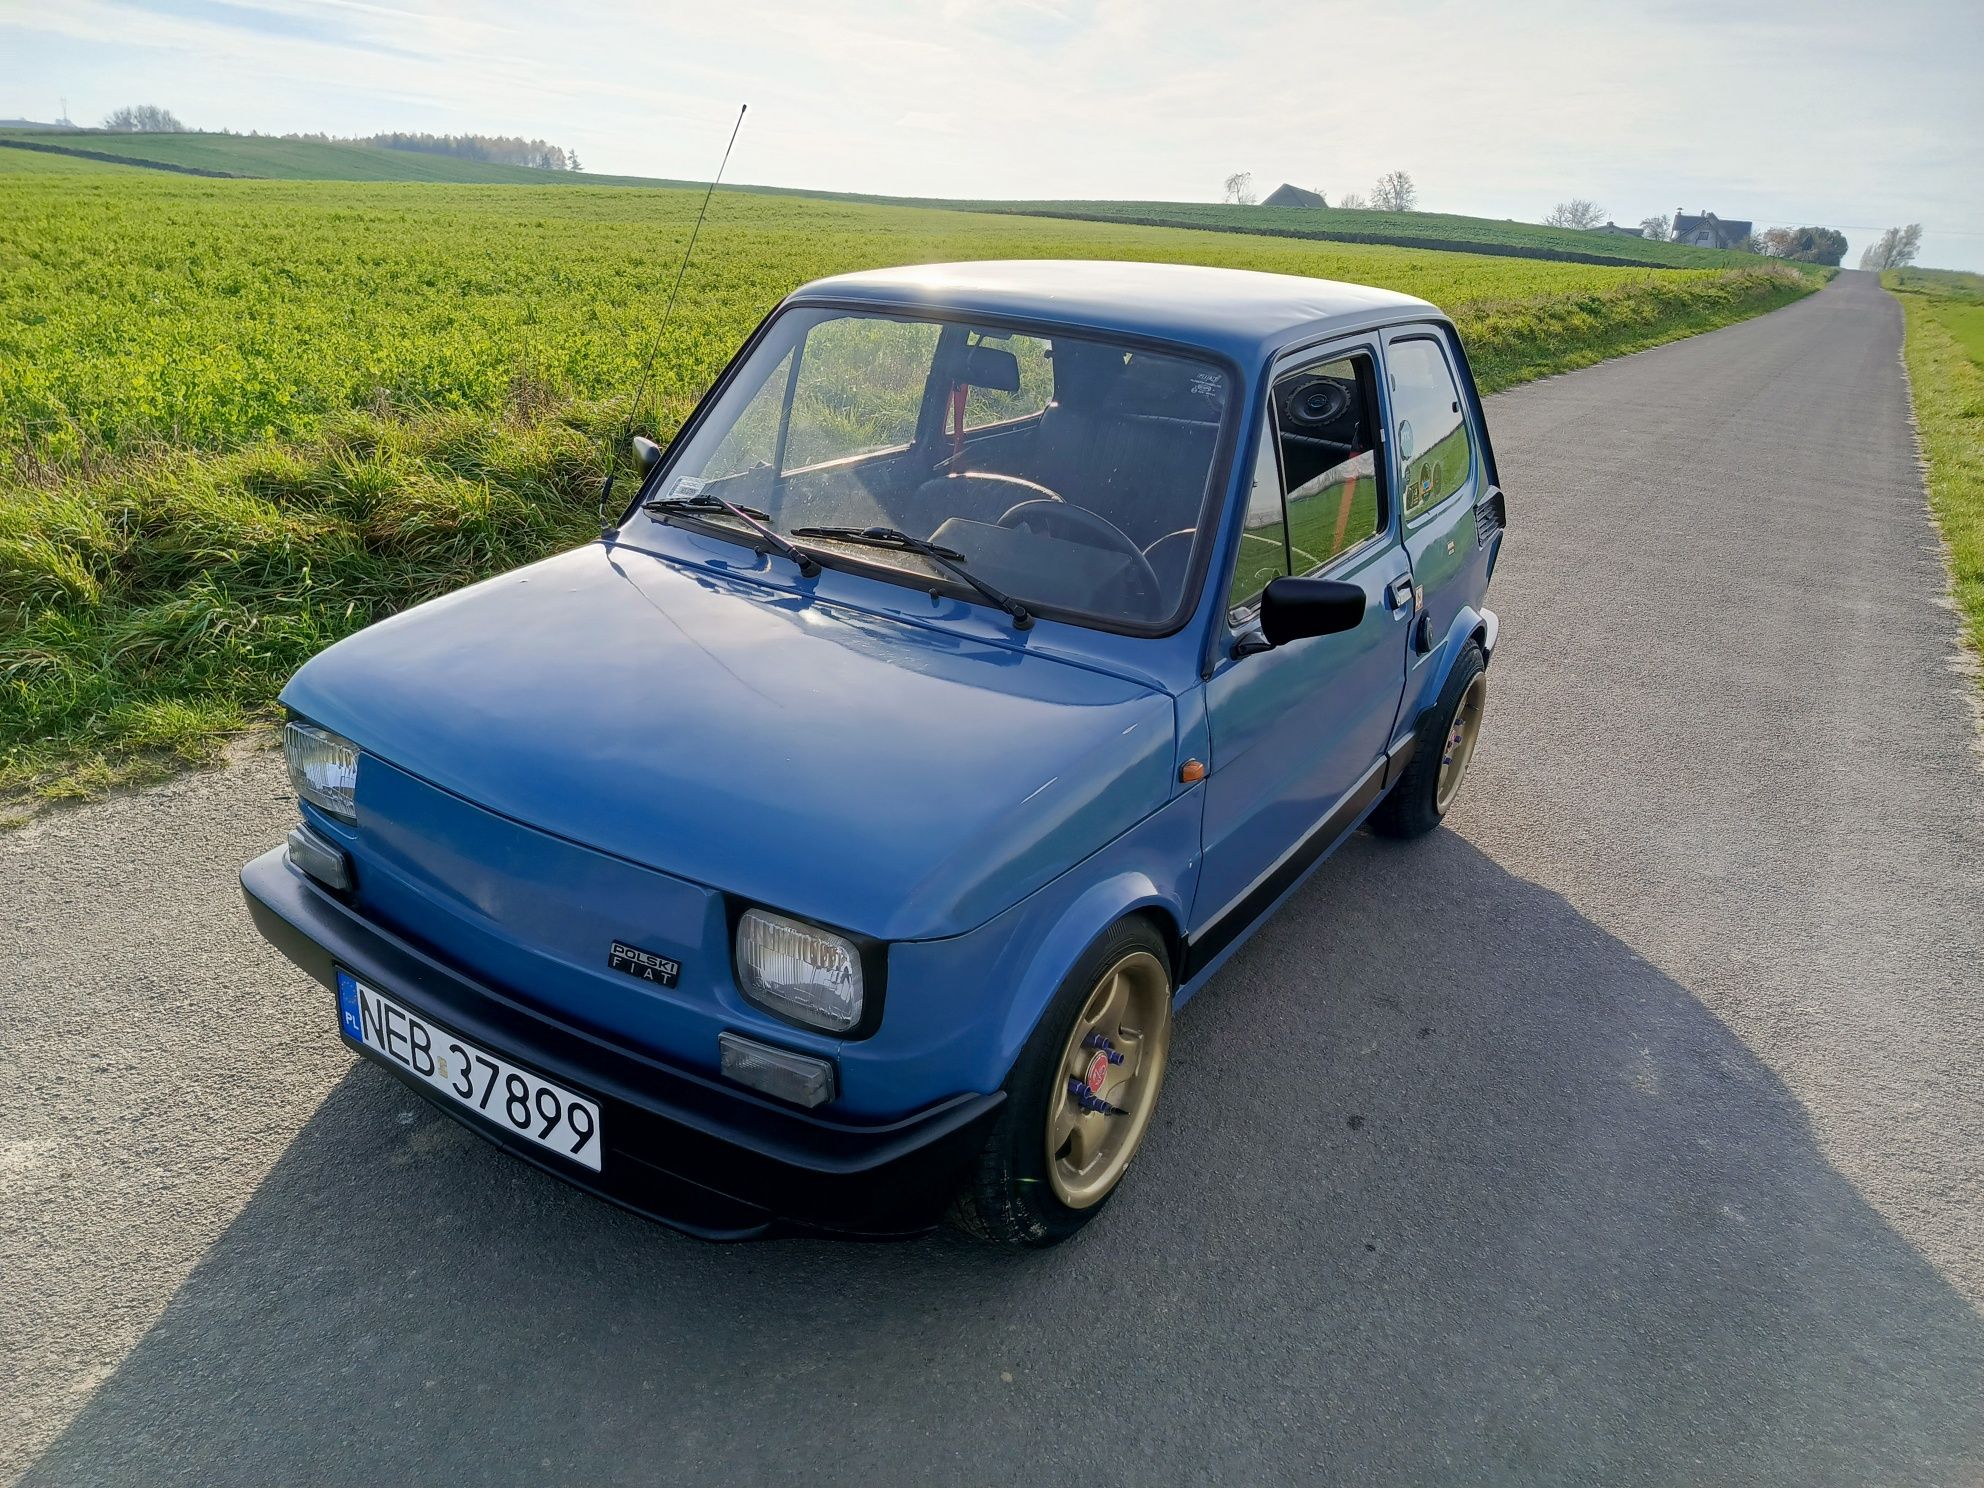 Fiat 126p, Maluch, Polski Fiat / Zamiana!